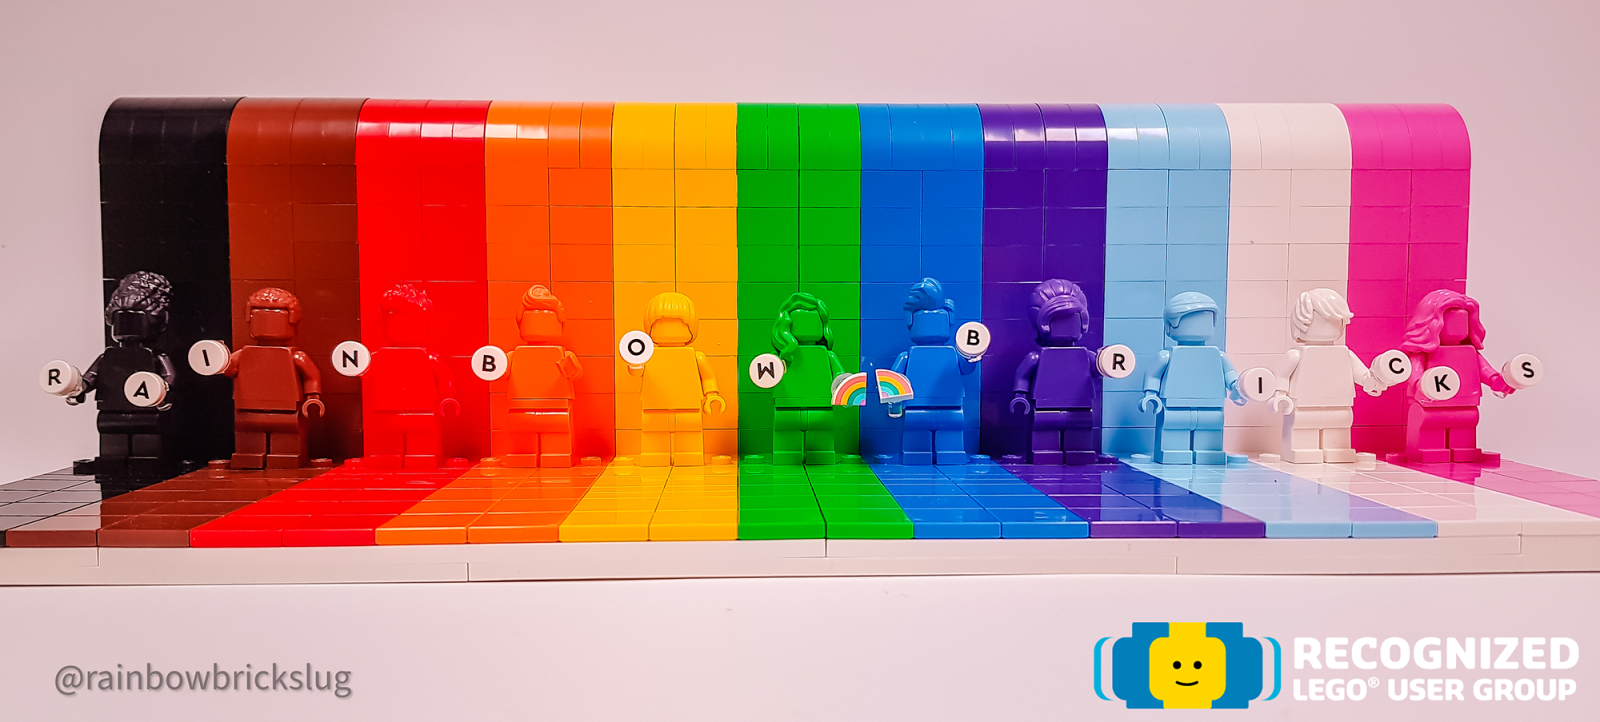 Rainbow Bricks RLUG [Recognized LEGO User Group]